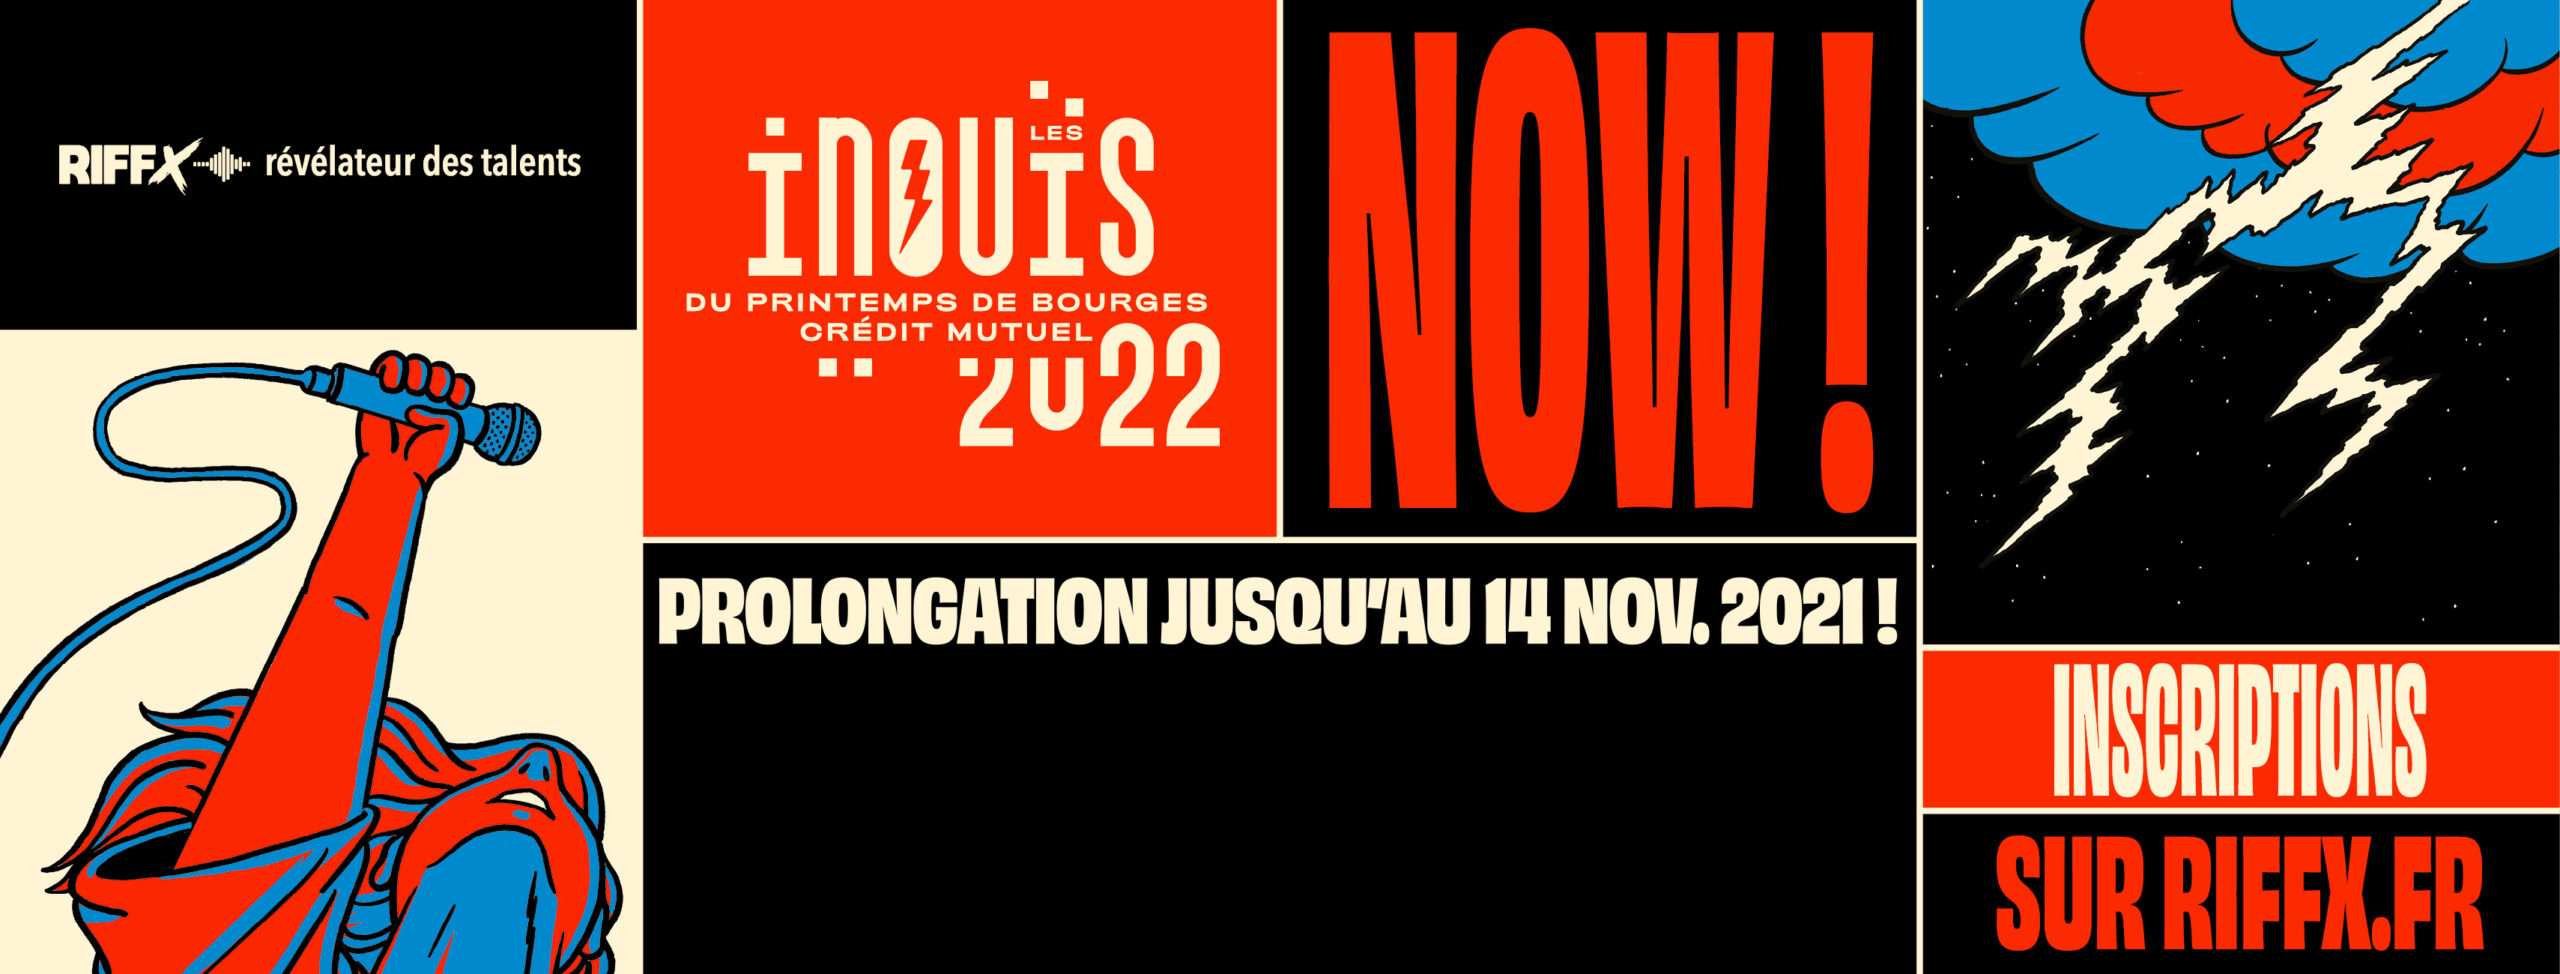 Affiche annonçant la prolongation de l'appel à candidature des INOUÏS 2022.